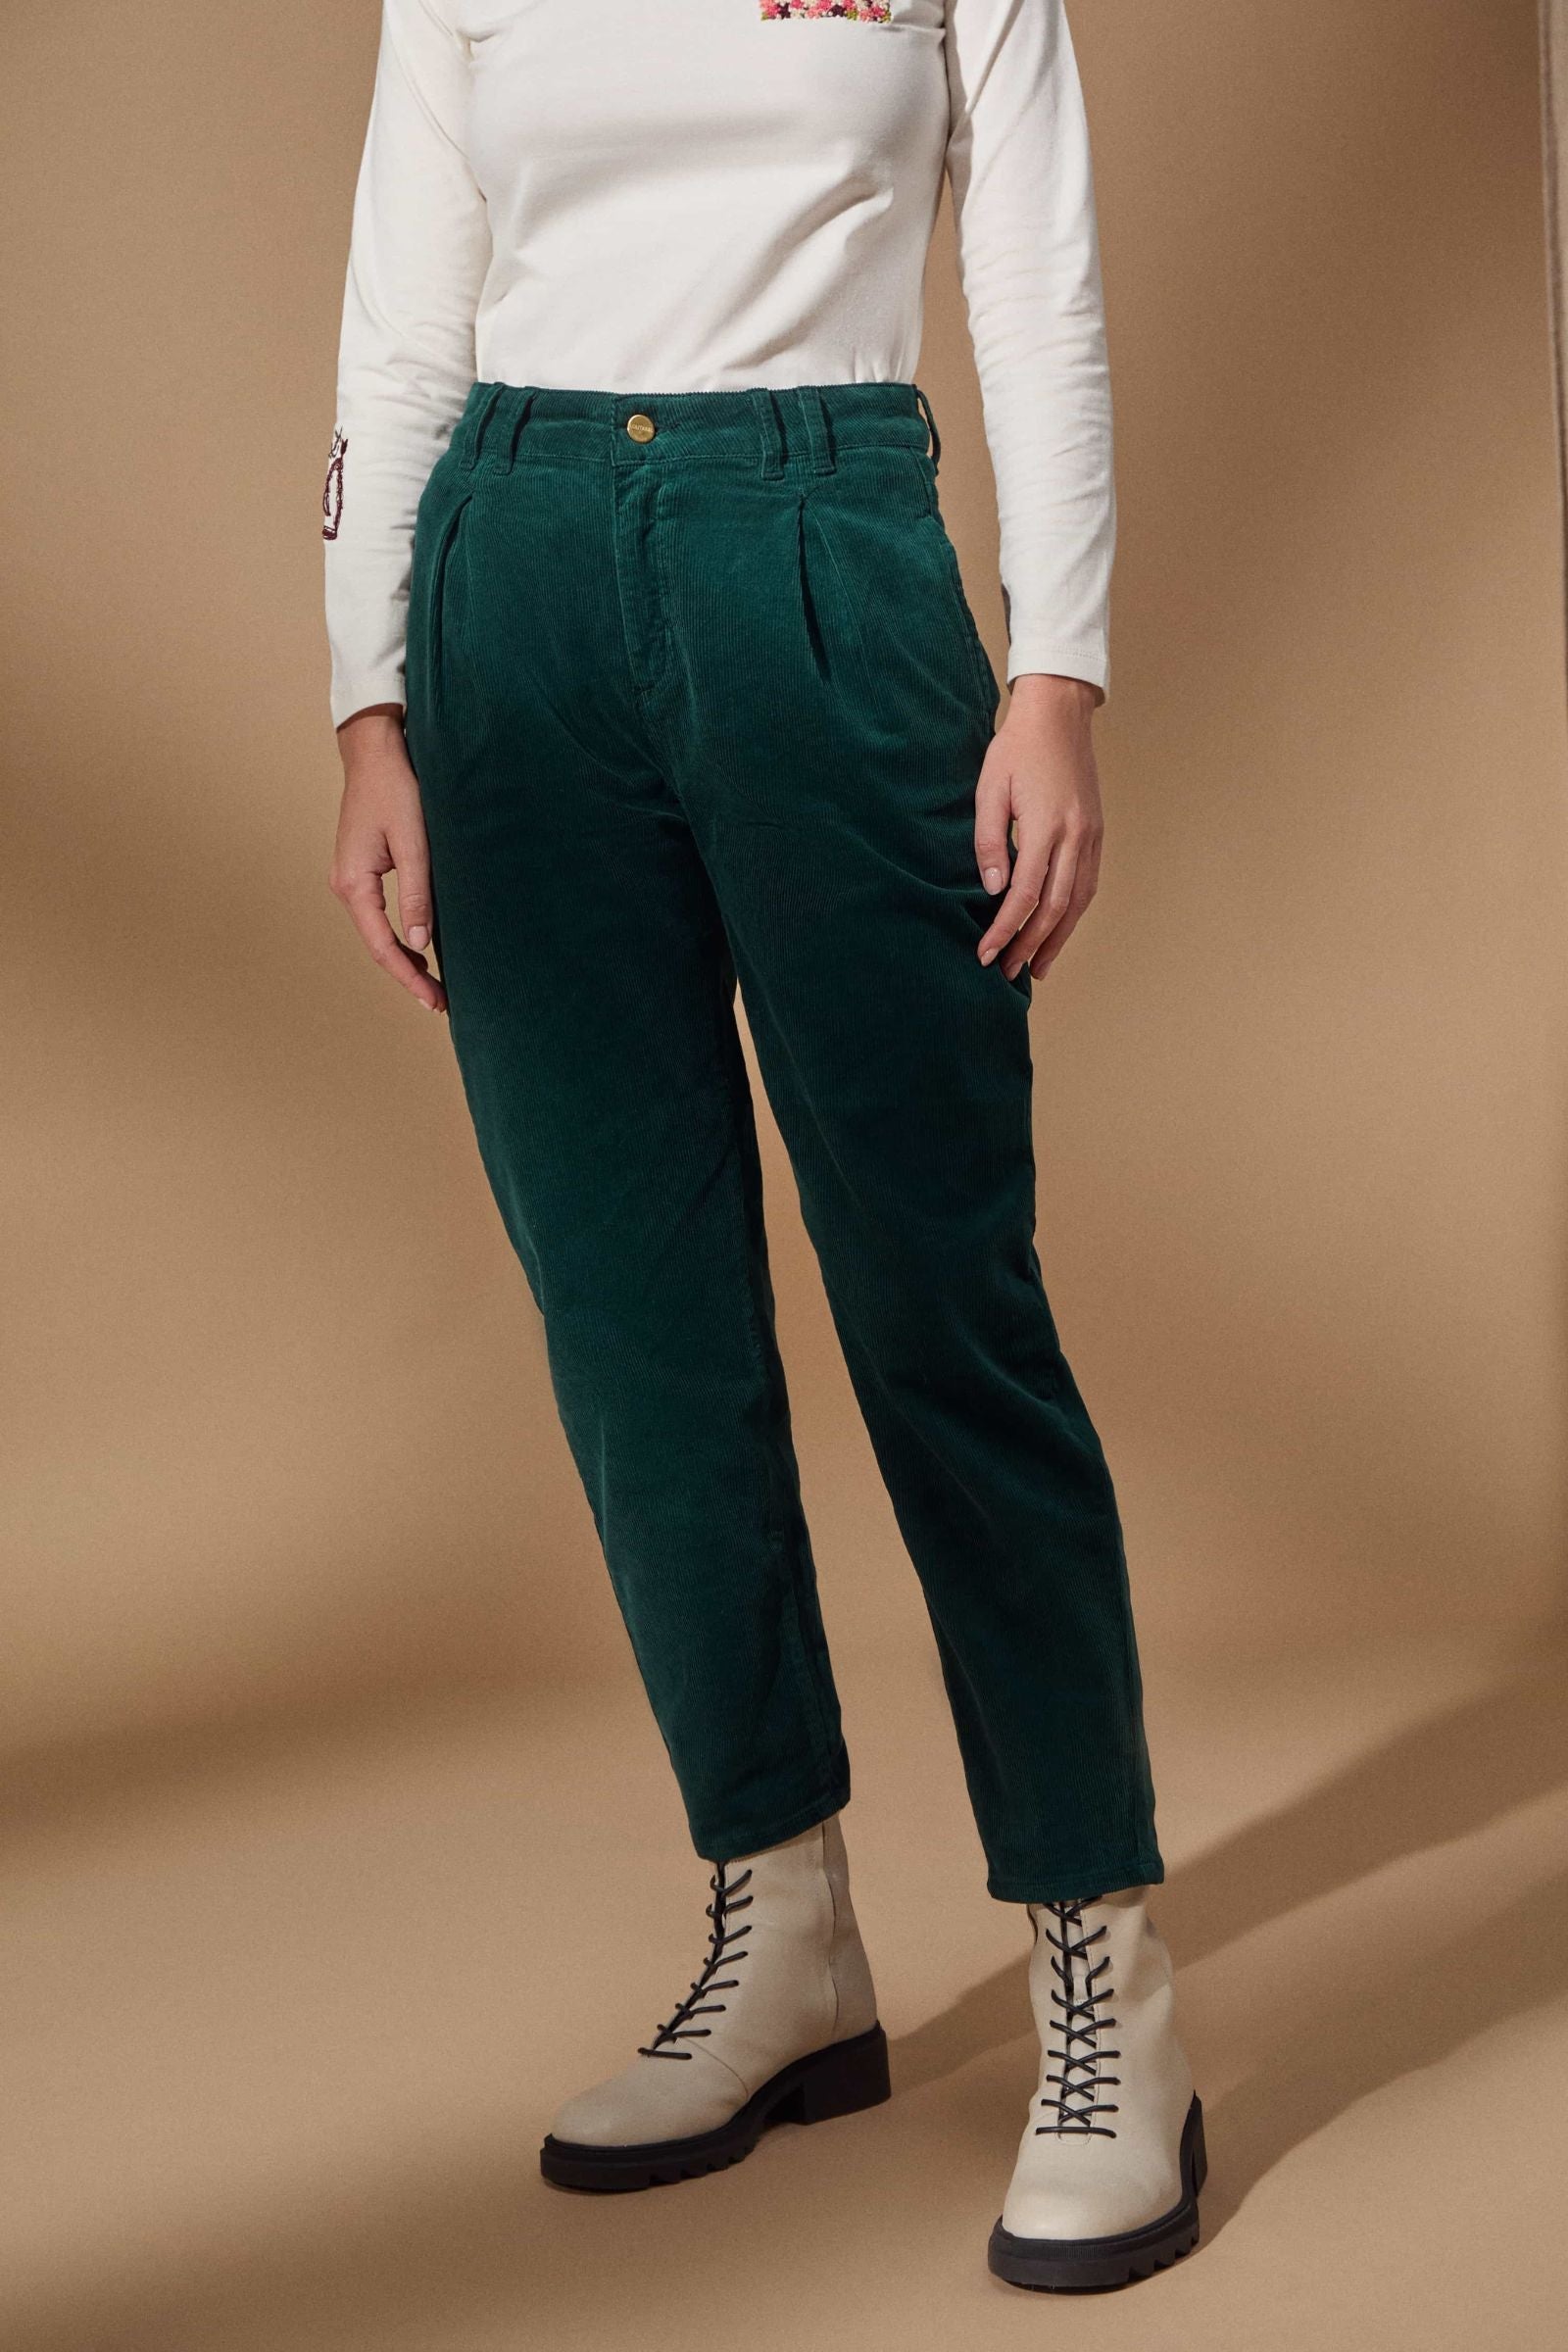 Pantalon de pana verde con pinzas Lolitas - lolitasyl.com